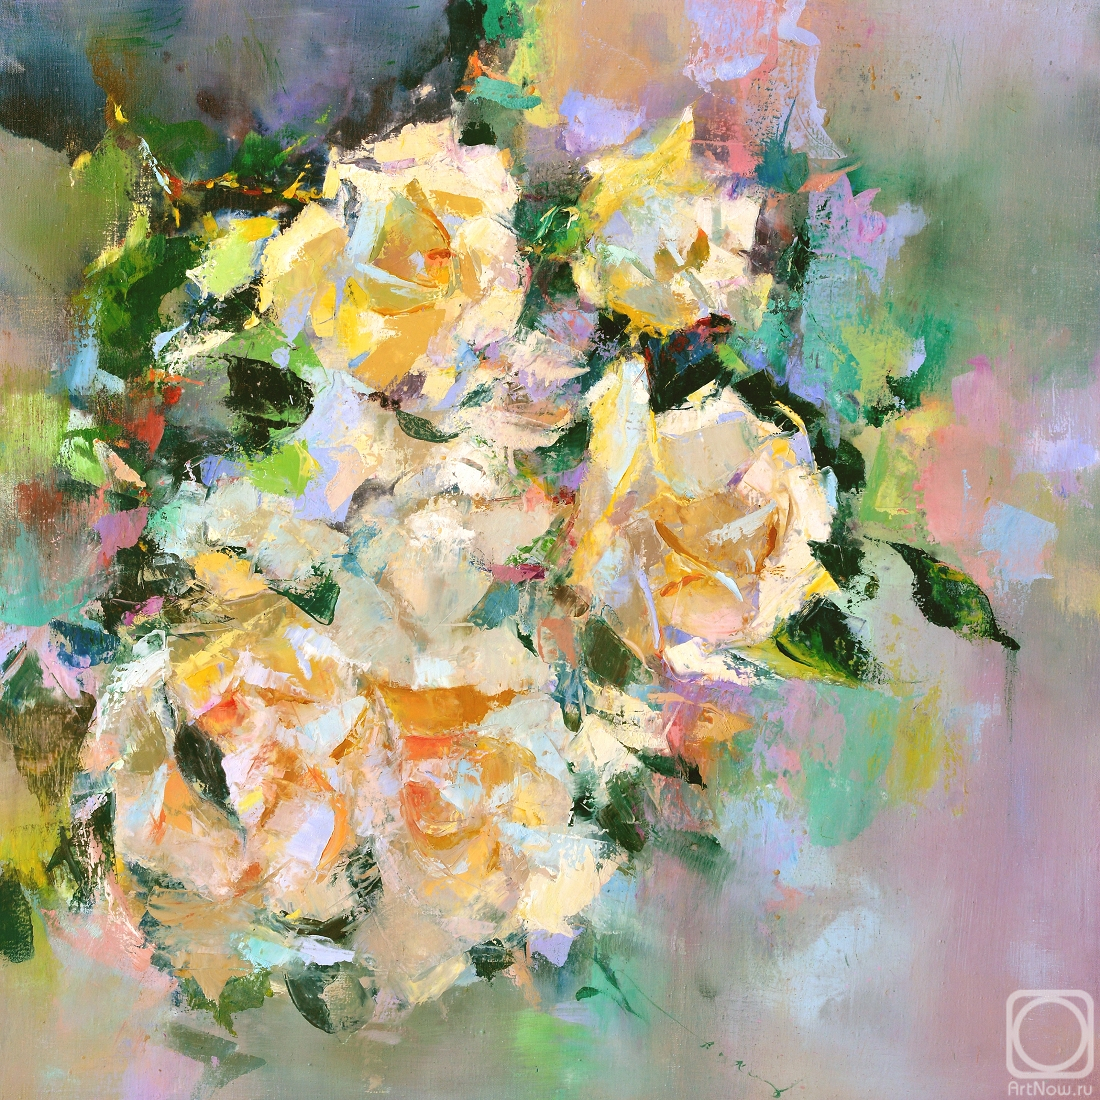 Kleshchyov Andrey. Roses